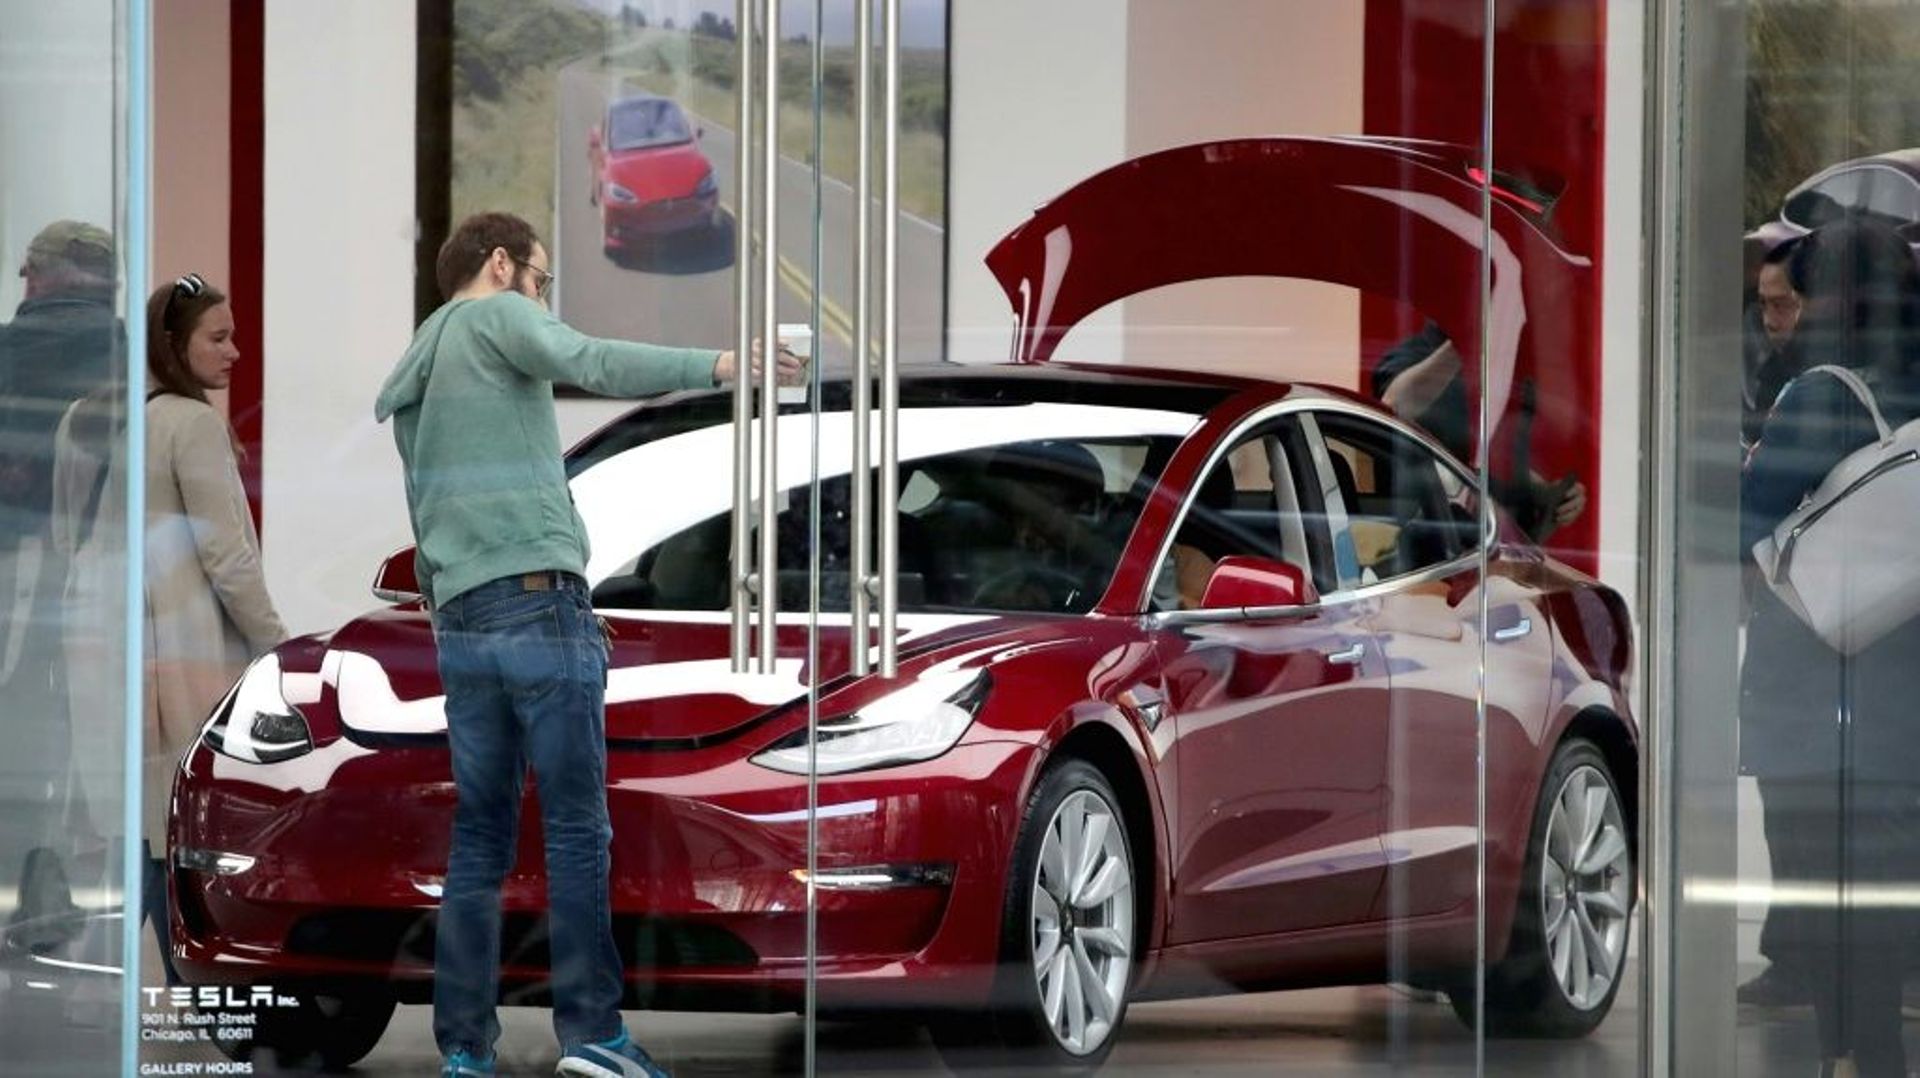 La Model 3 doit permettre à l'américain Tesla de pénétrer le segment moyen de gamme et d'atteindre une production de masse